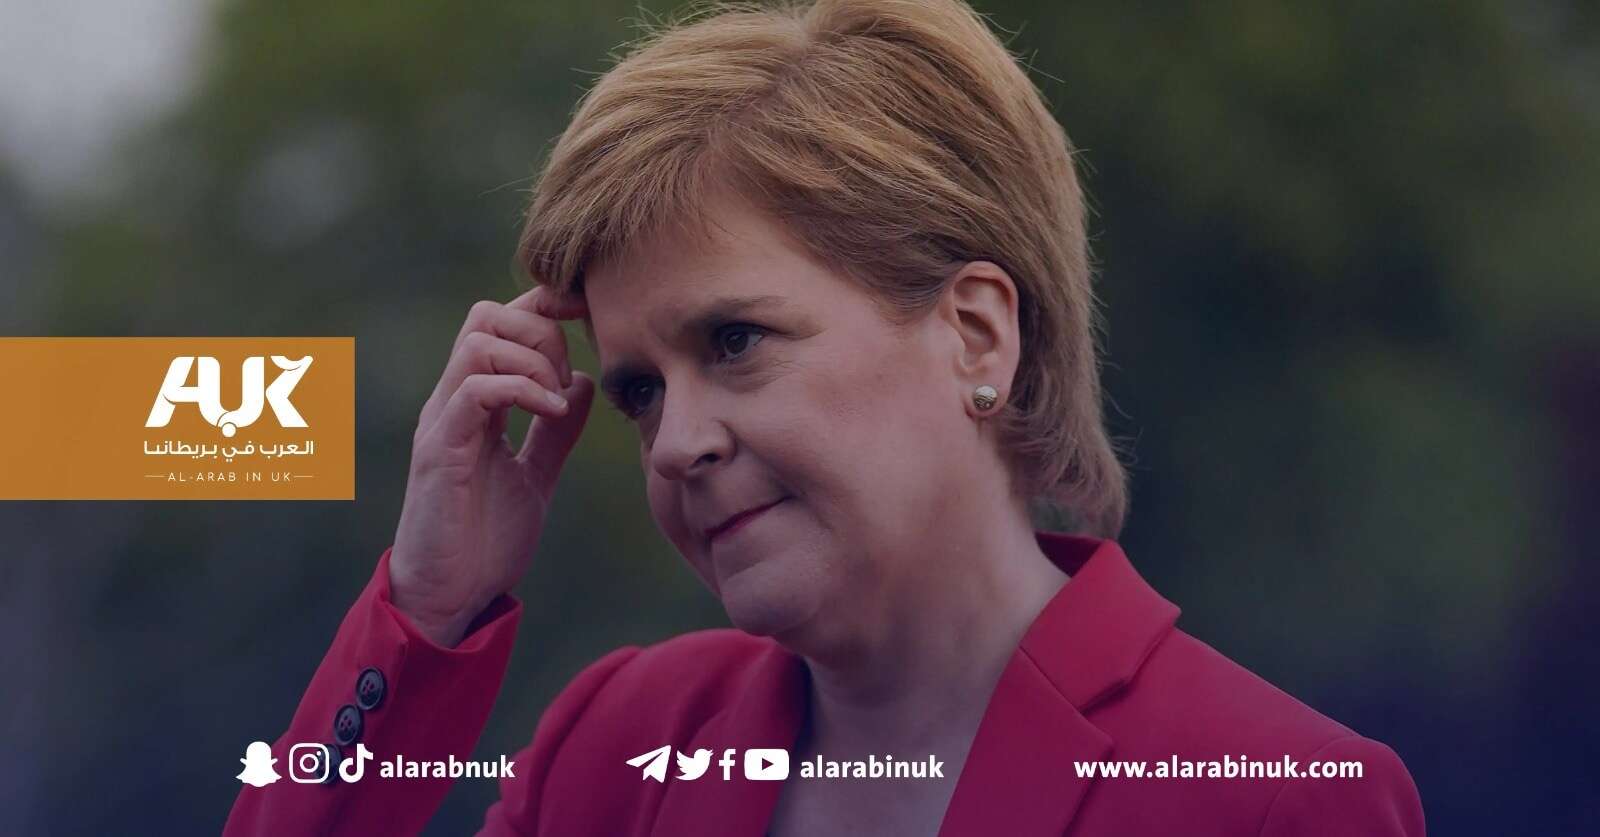 اعتقال زوج رئيسة وزراء اسكتلندا السابقة يثير جدلا